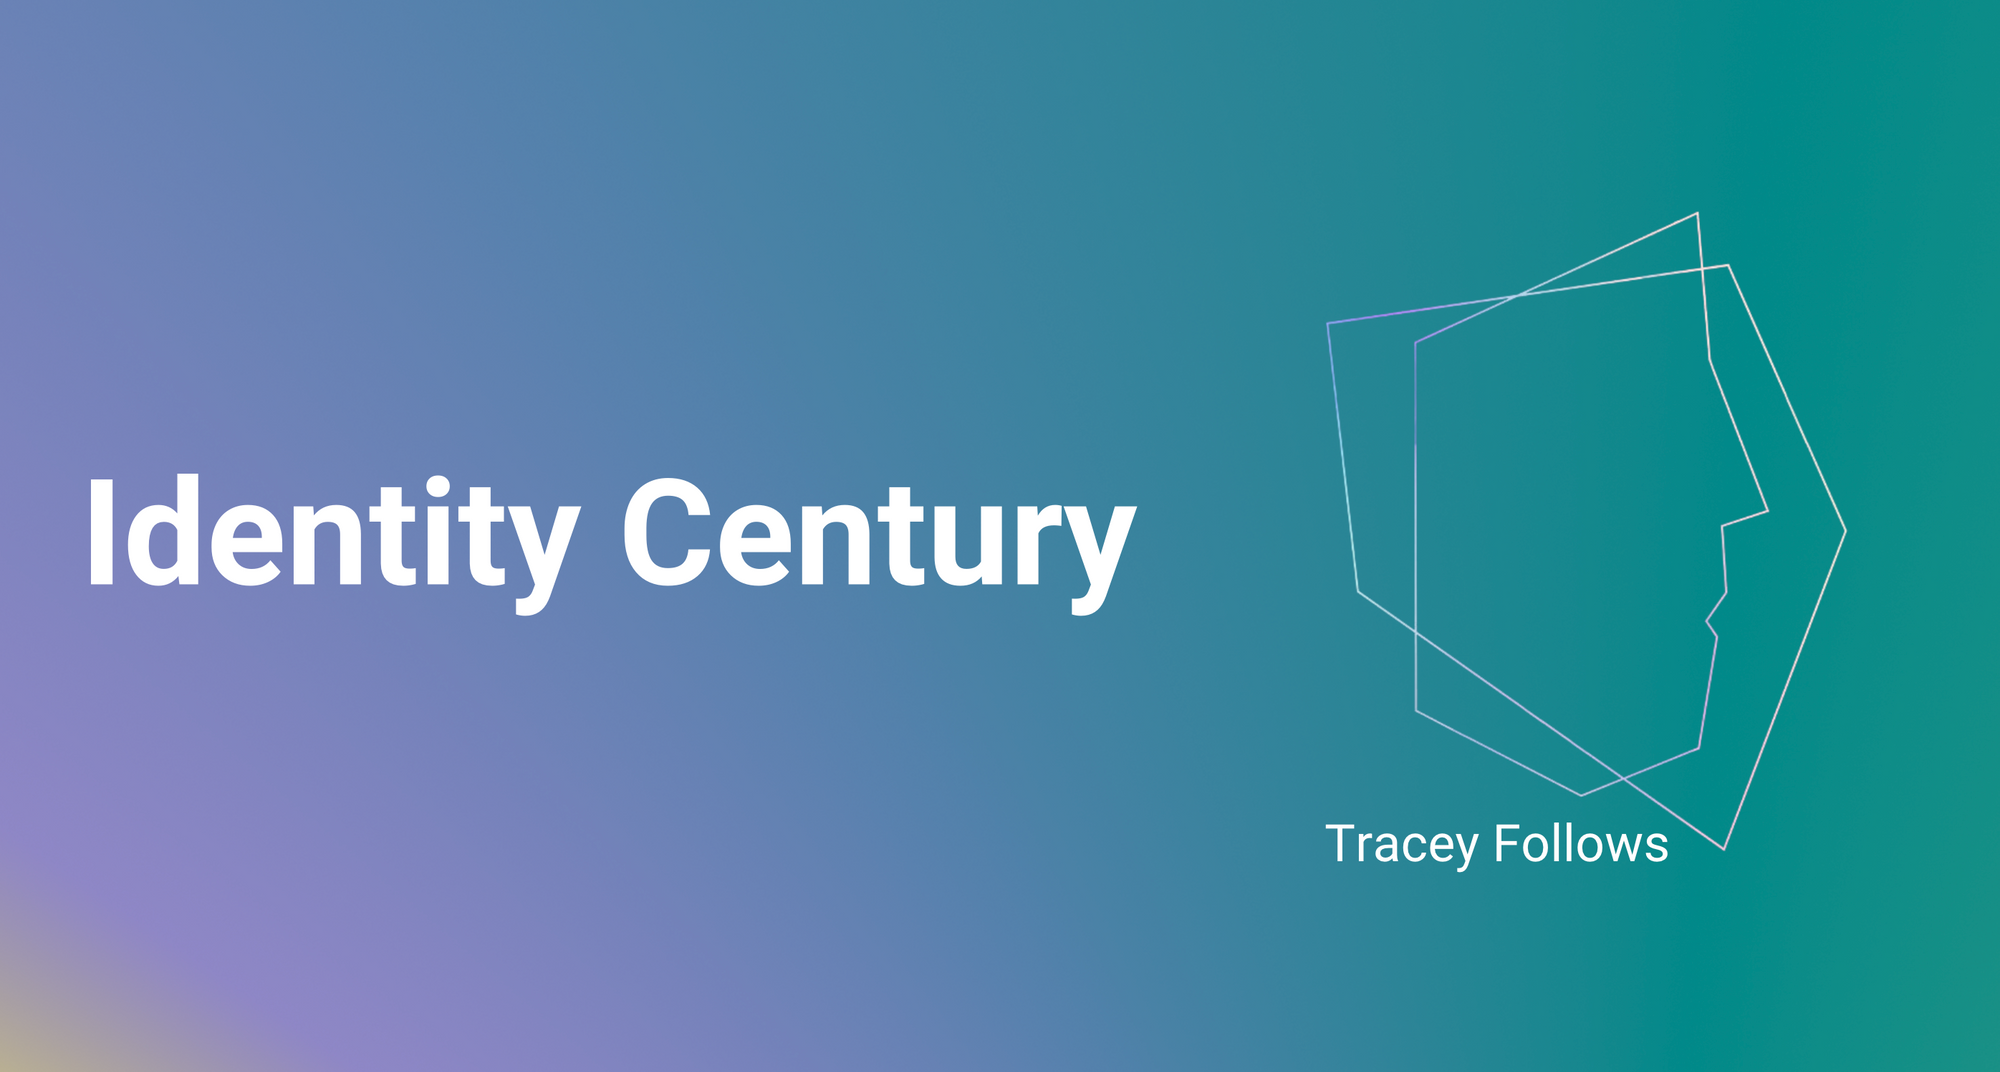 Identity Century Is Here